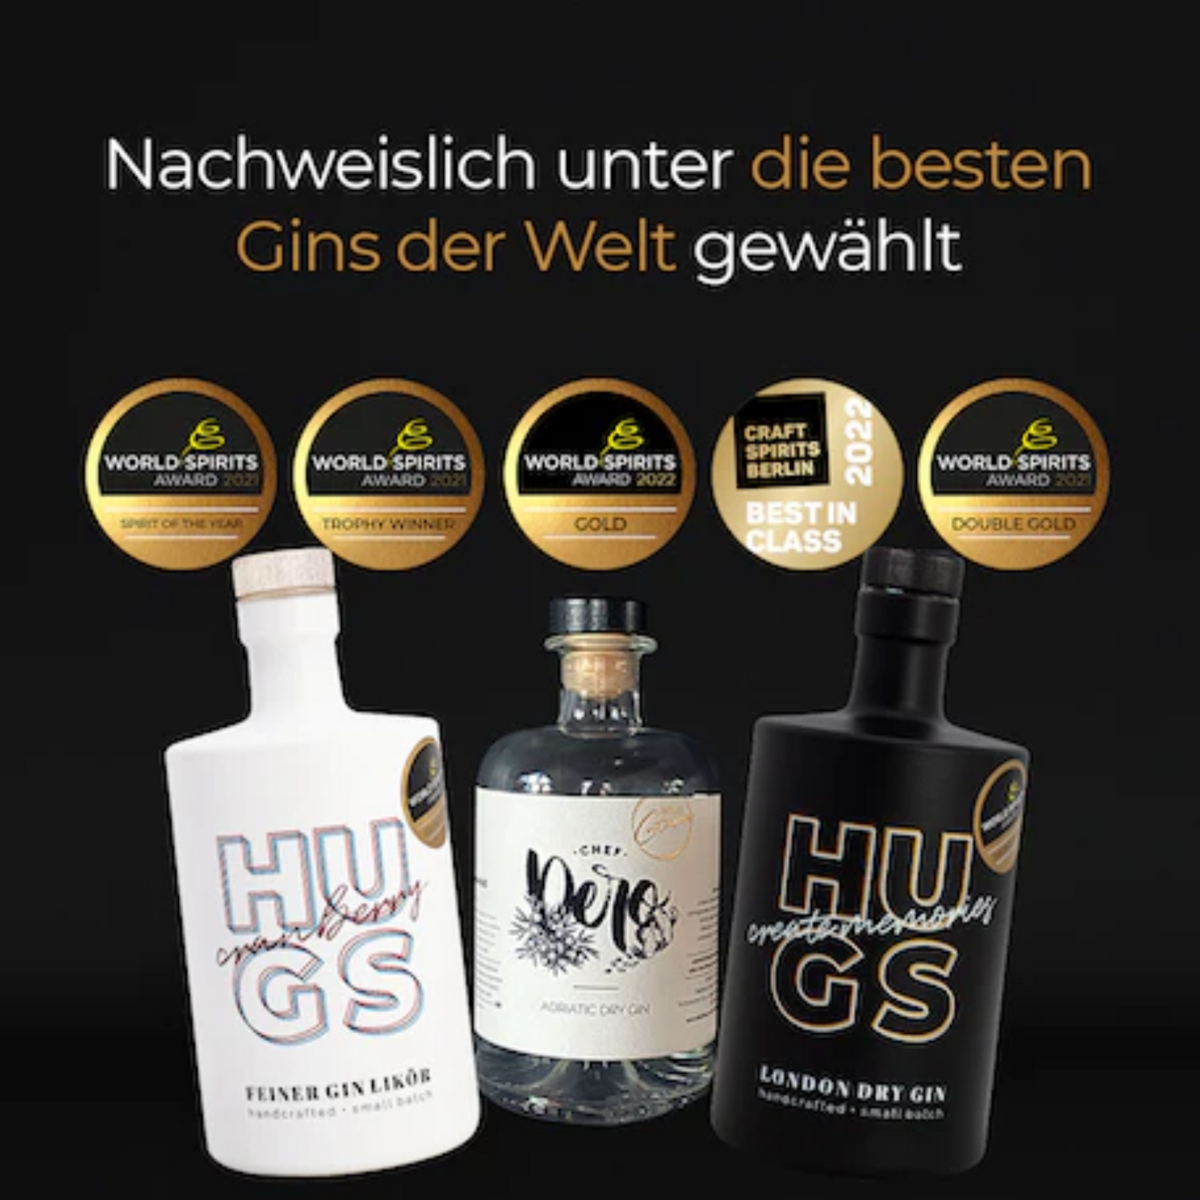 HUGS - Testsieger Gin Tastingbox (3 x 0,1l) – HELP & ENJOY